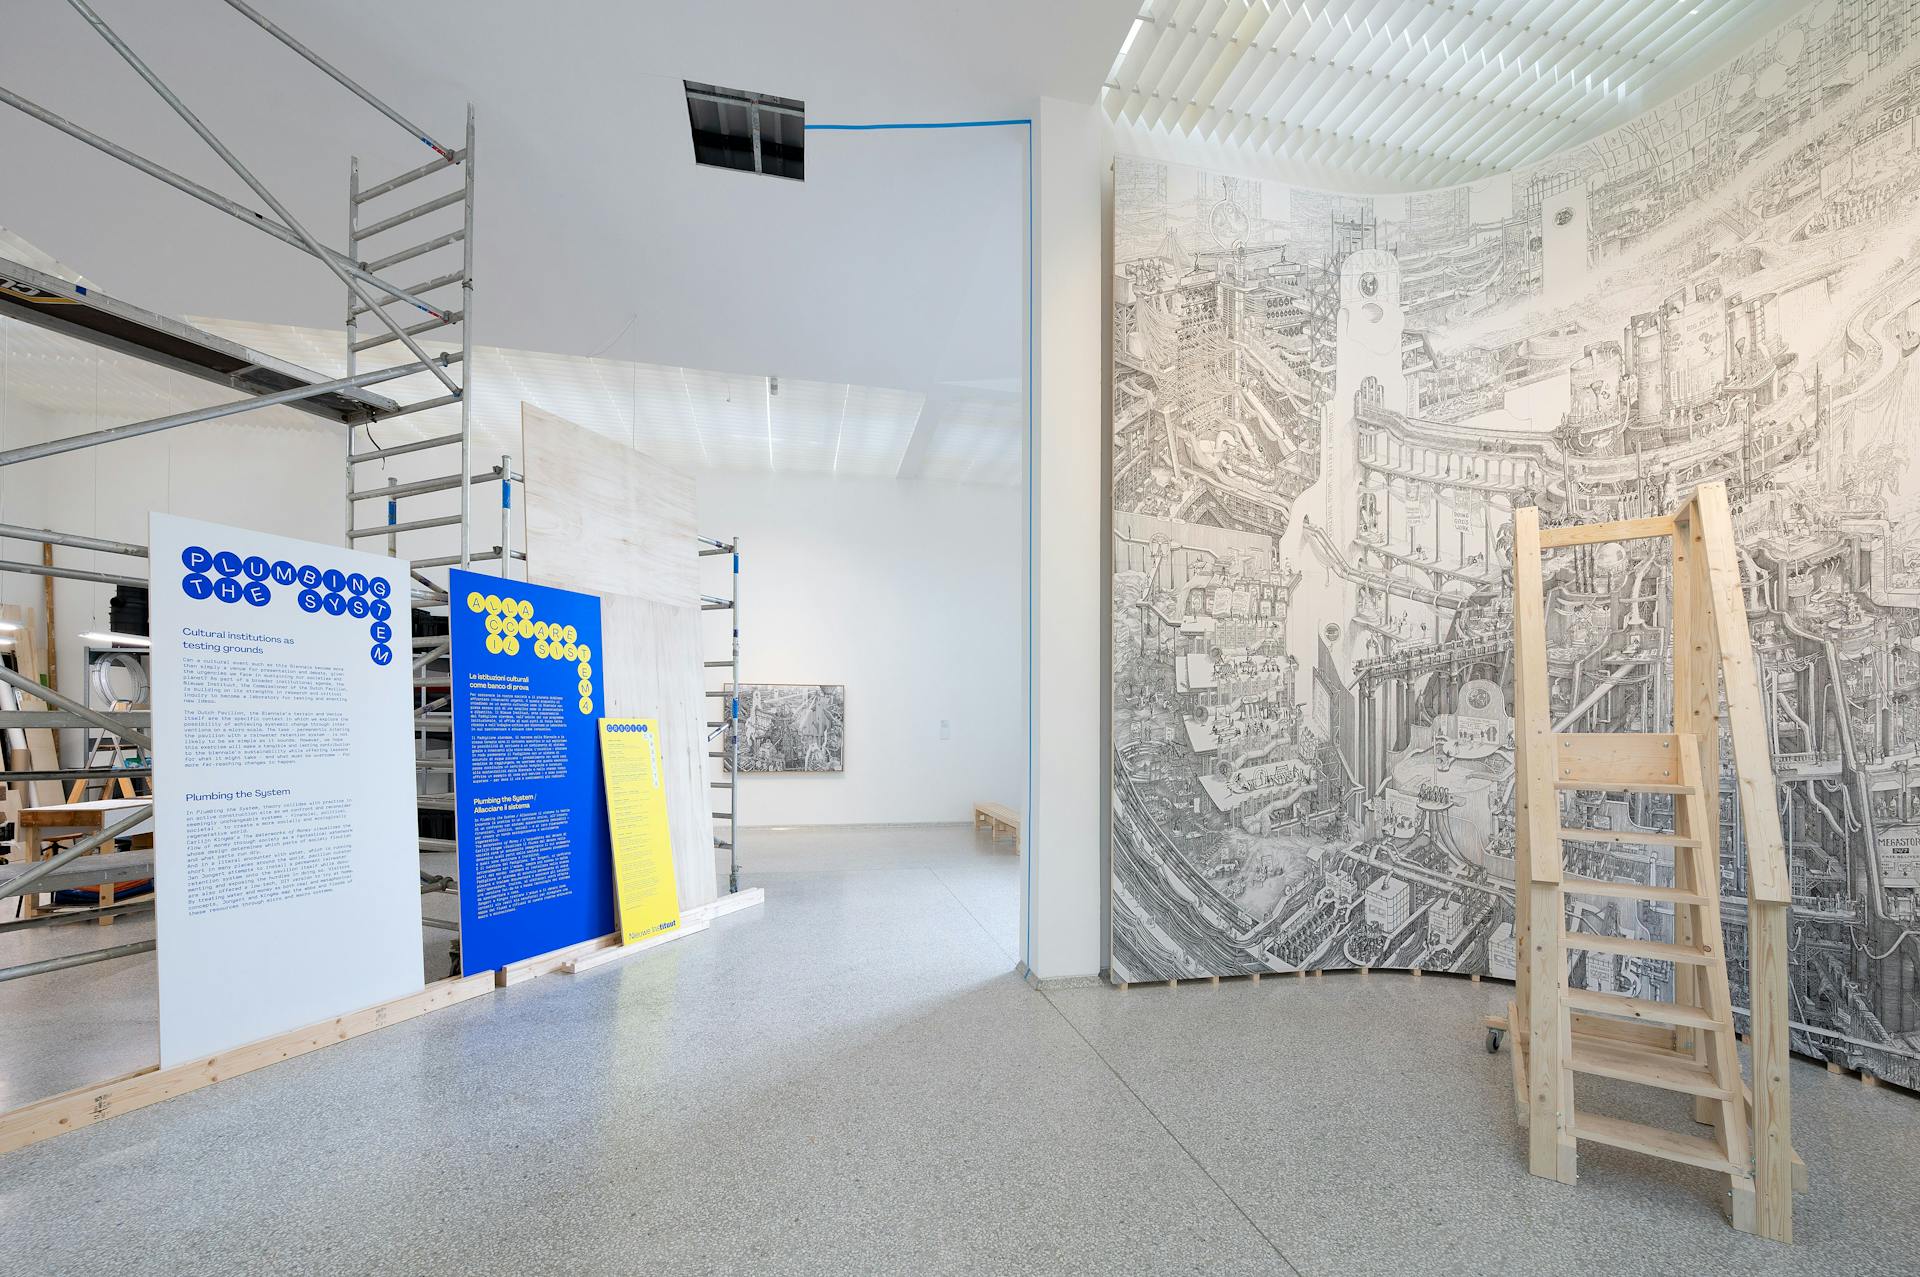 Afbeelding van een tentoonstellingsruimte. Links een stellage met zaalteksten in grafisch ontwerp, rechts een gedetailleerde tekening zo hoog als de muur, met een trap om deze van dichterbij te bekijken.